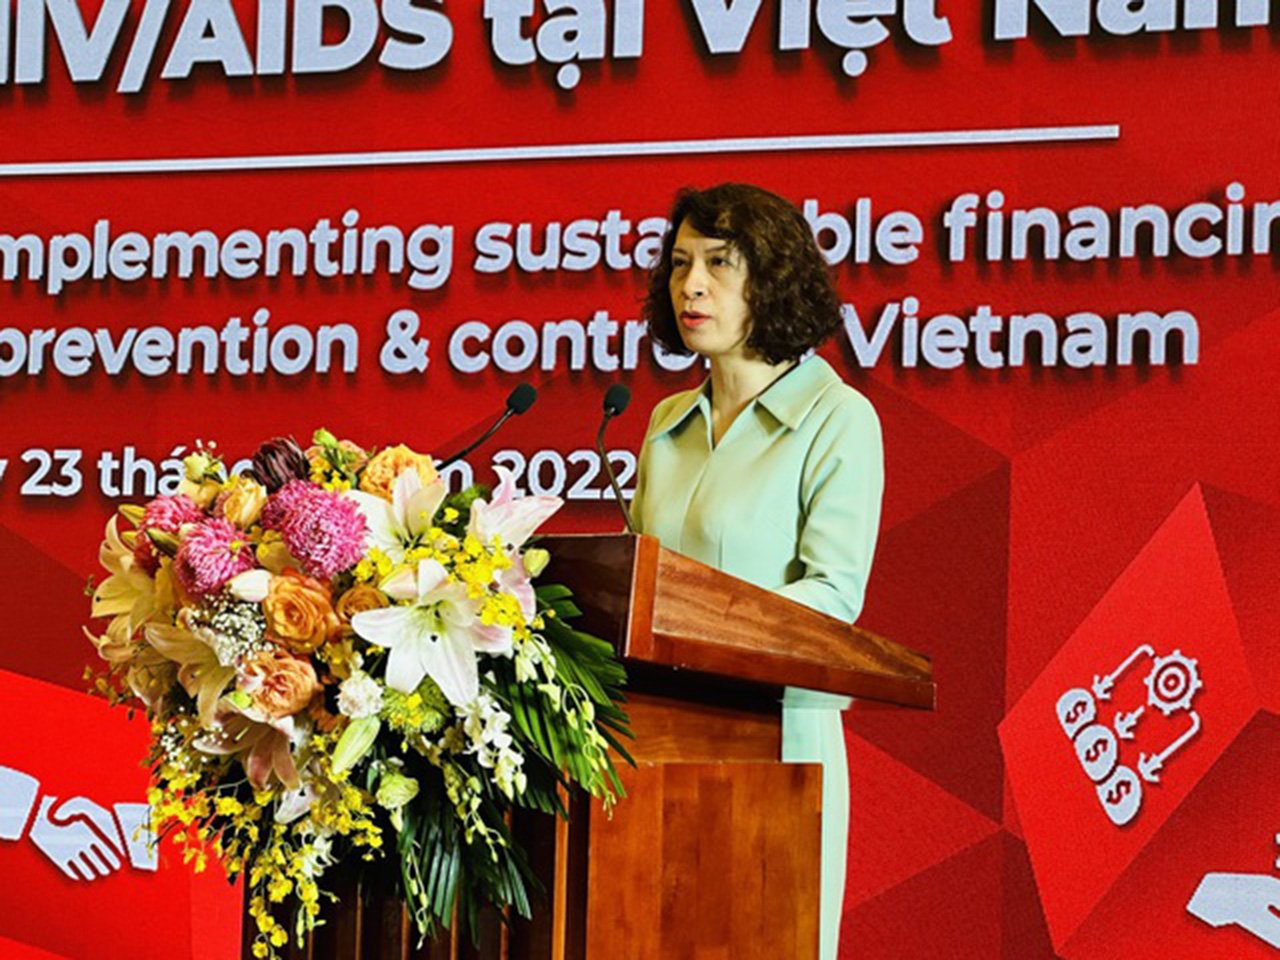 Thứ trưởng Bộ Y tế Nguyễn Thị Liên Hương phát biểu tại Hội nghị tổng kết 10 năm bảo đảm tài chính cho các hoạt động phòng, chống HIV/AIDS tại việt nam (2012-2022) - Ảnh tiengchuong.chinhphu.vn